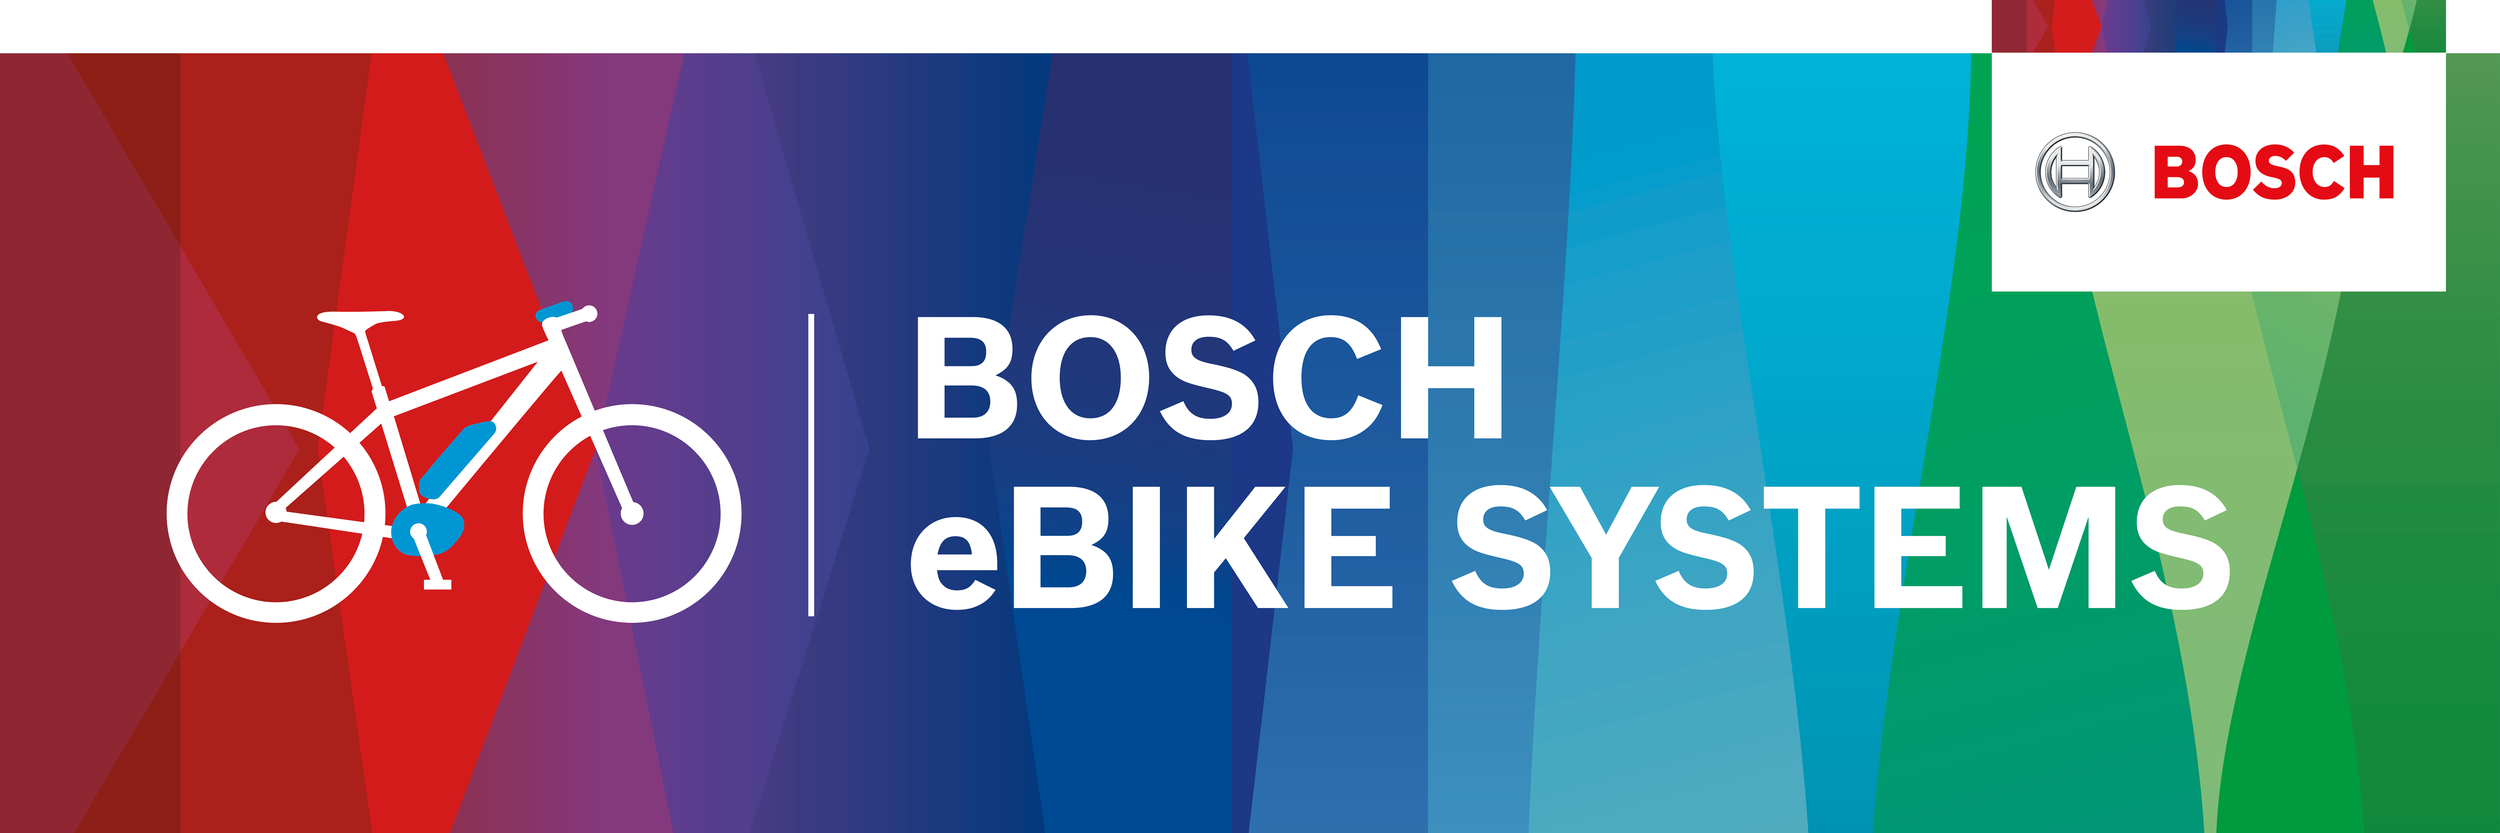 Bosch+Ebike+Banner